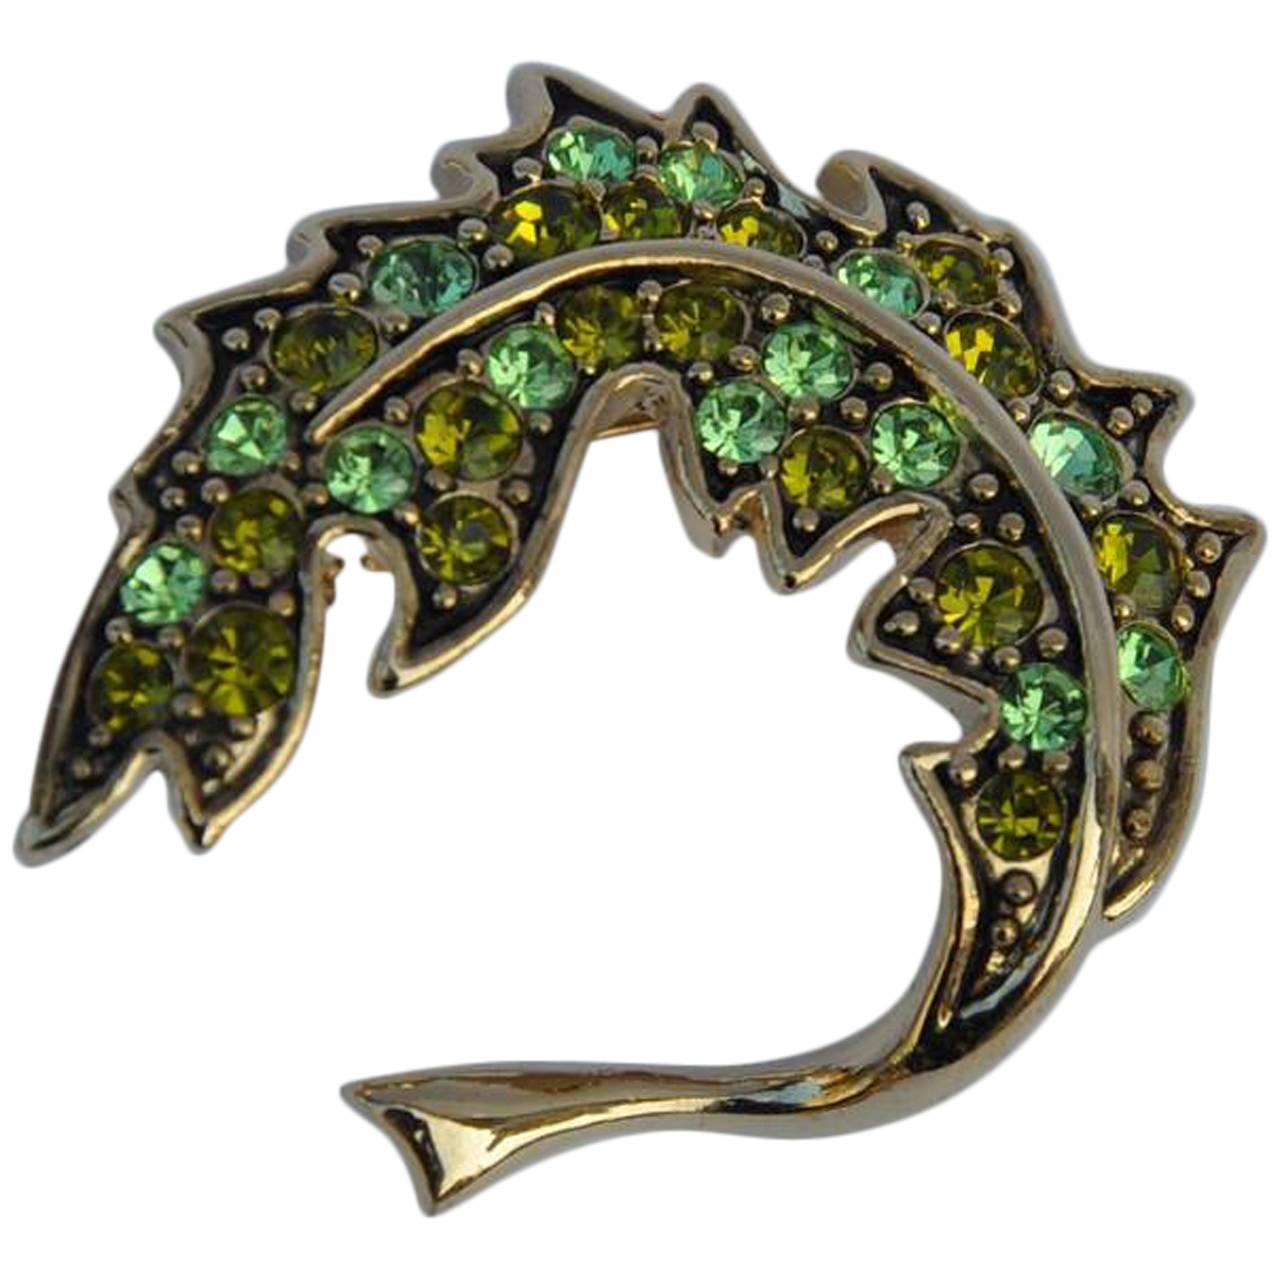 Trifari Gold Vermeil with Emerald Green Rhinestone "Leaf" Brooch